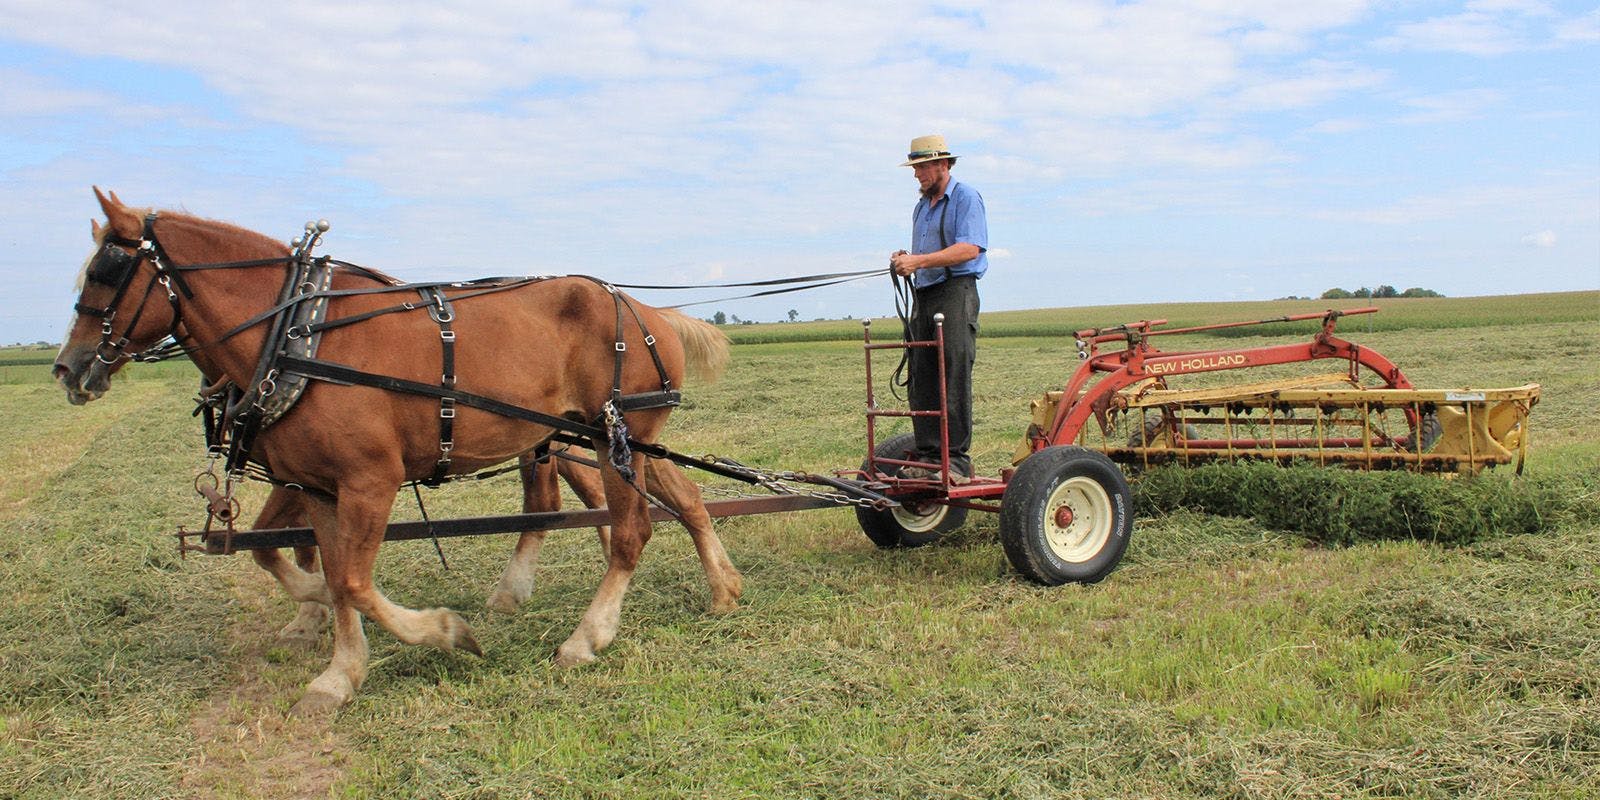 Raking hay with horses on an Amish farm